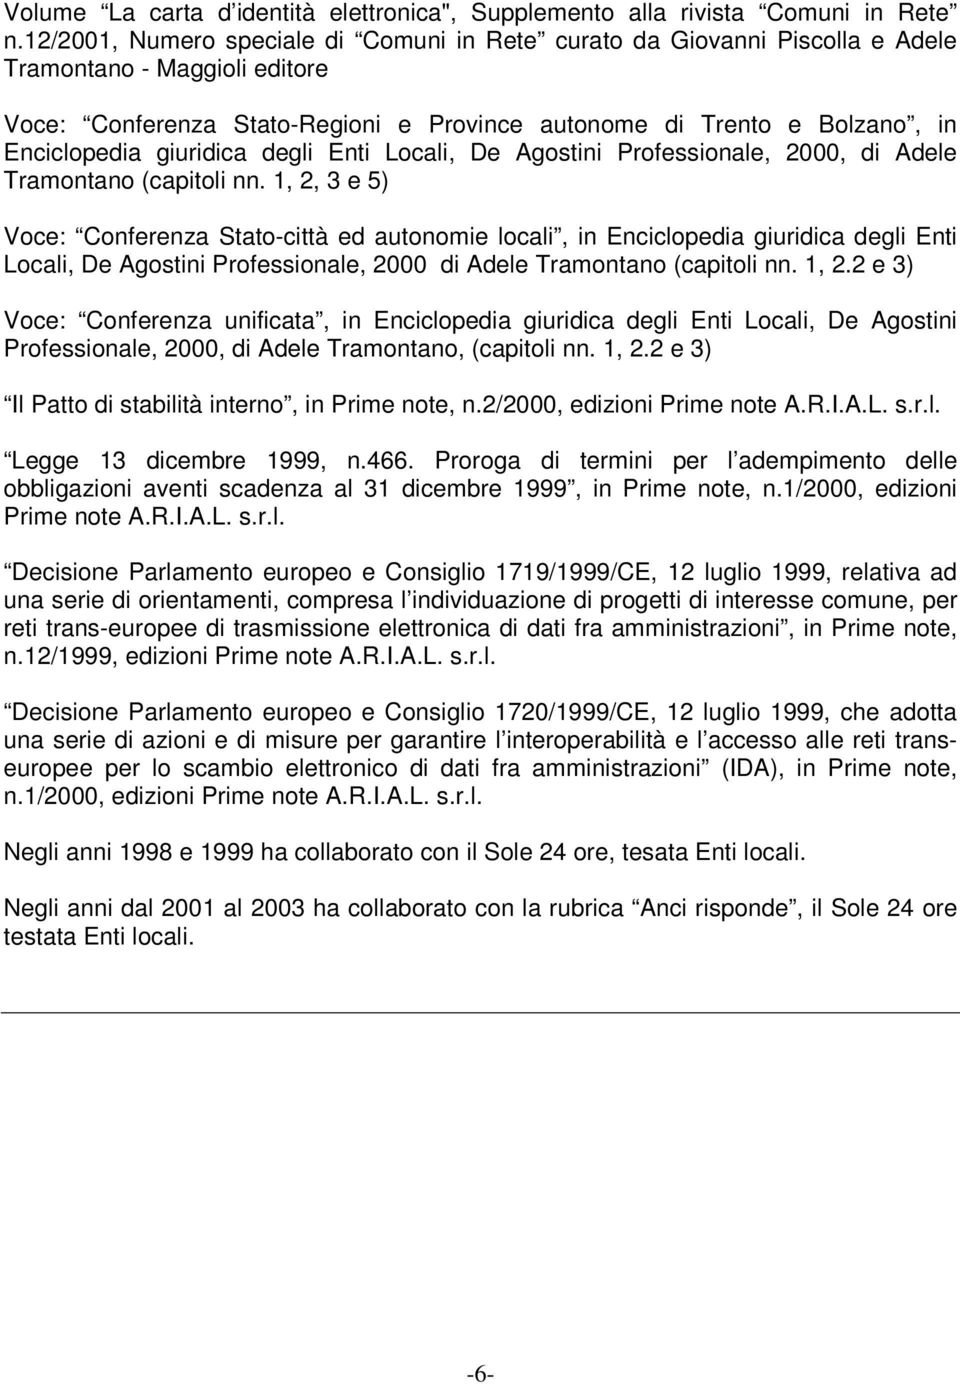 giuridica degli Enti Locali, De Agostini Professionale, 2000, di Adele Tramontano (capitoli nn.